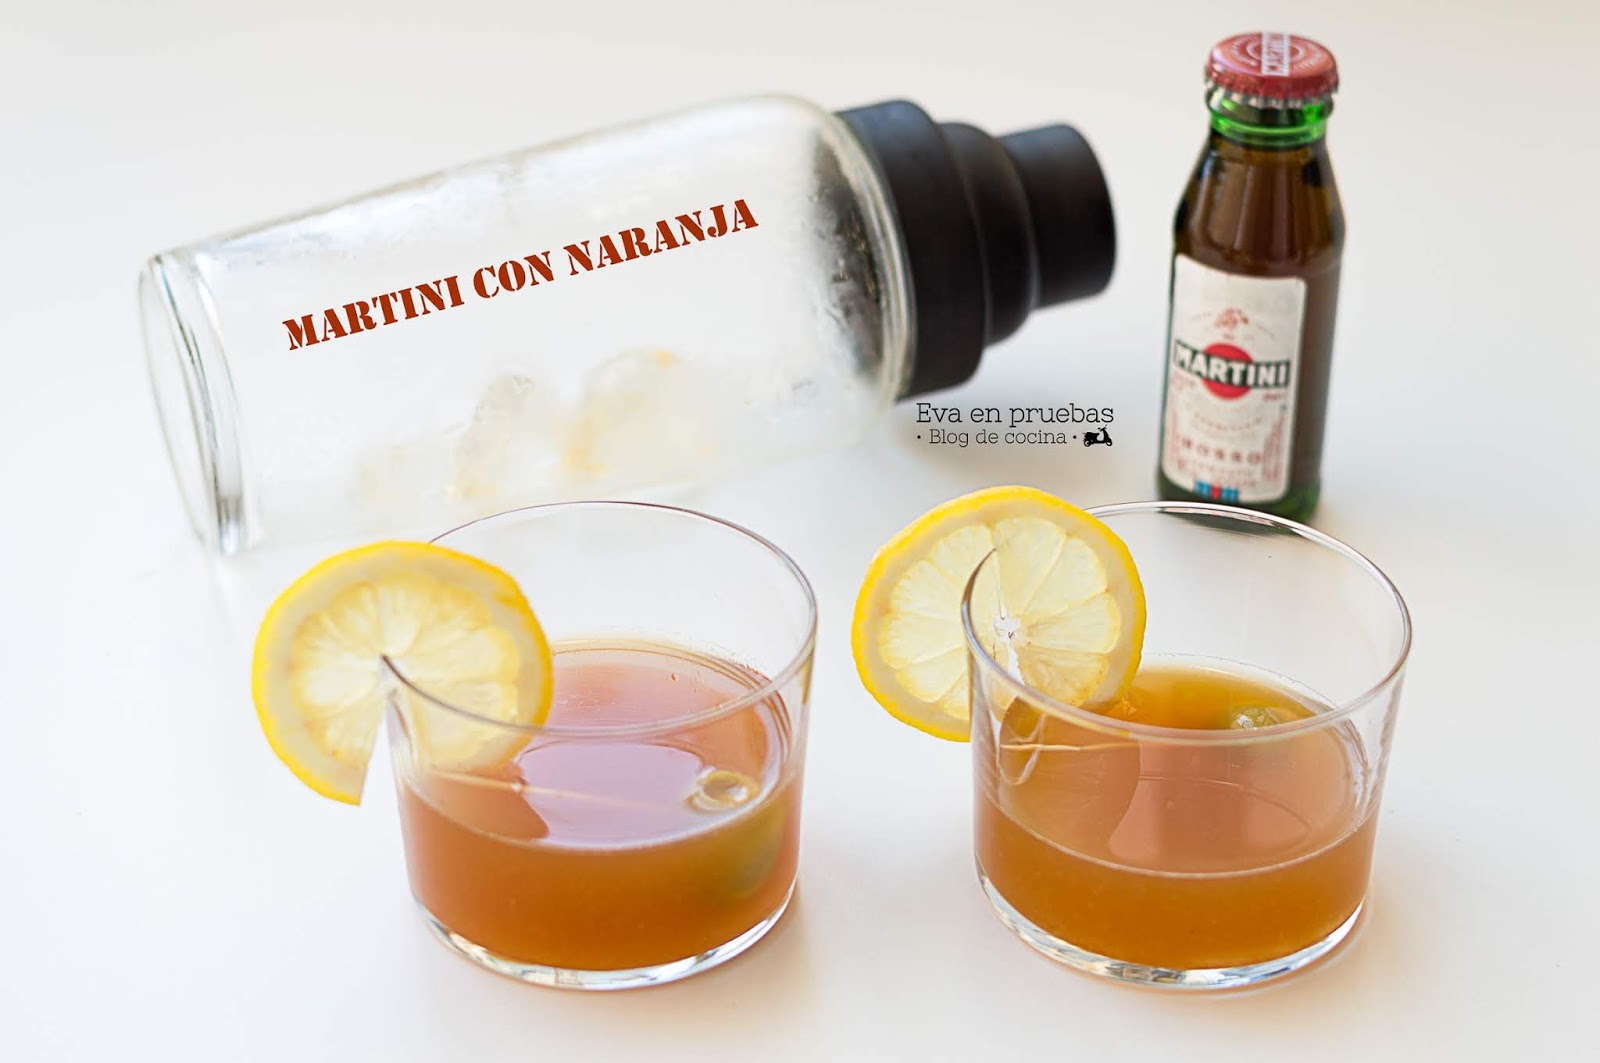 Martini Naranja | en pruebas